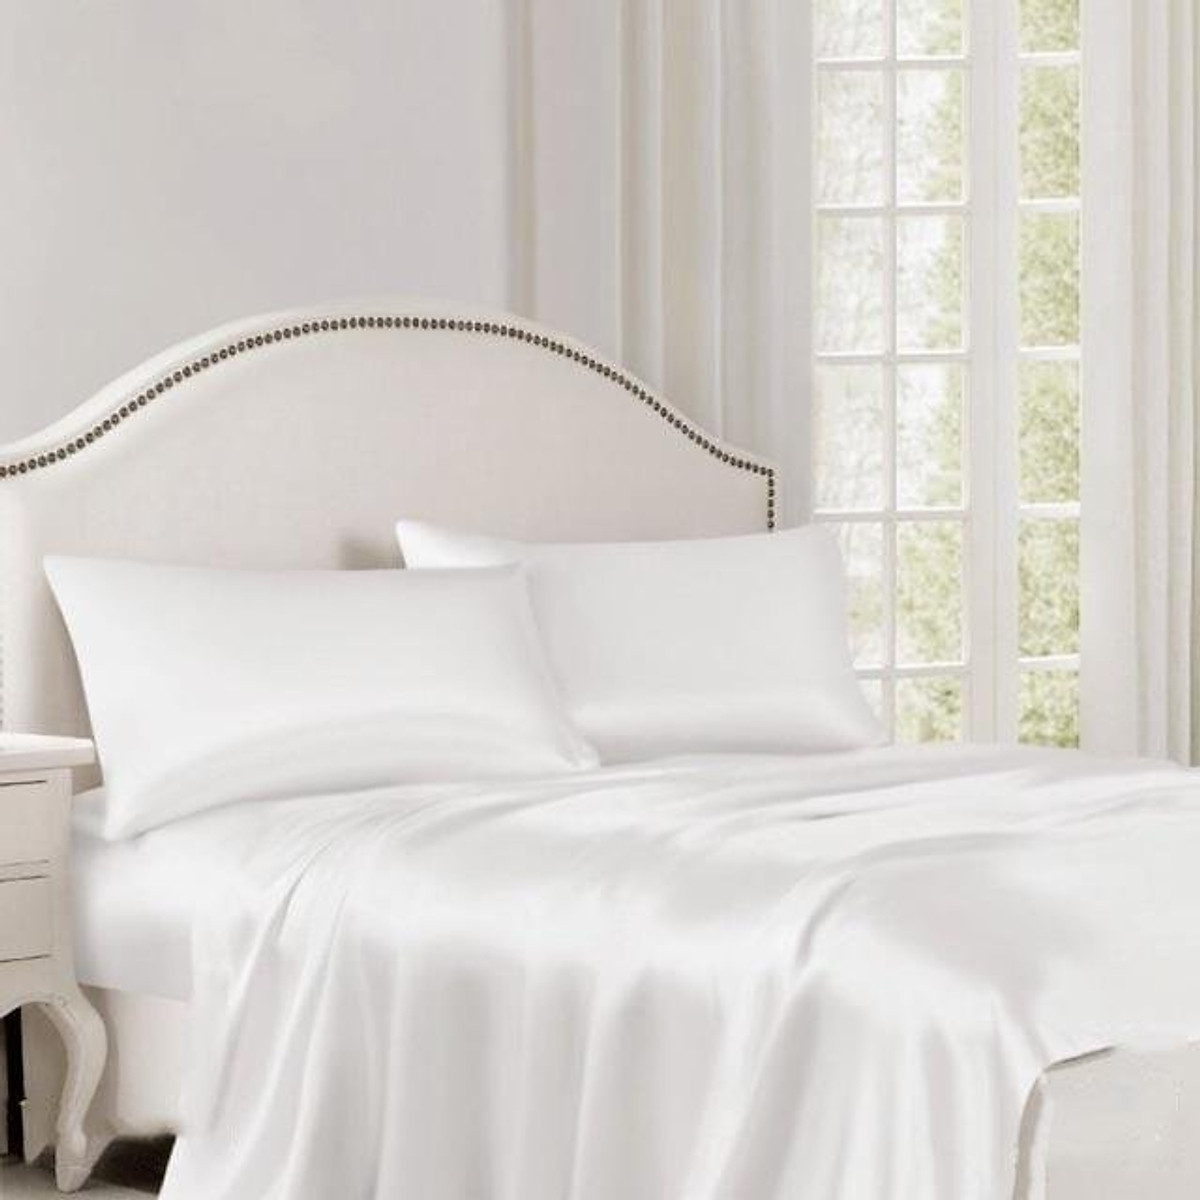  Drap giường màu trắng trơn giúp phòng ngủ có diện tích khiêm tốn trở nên thoáng và không rối mắt